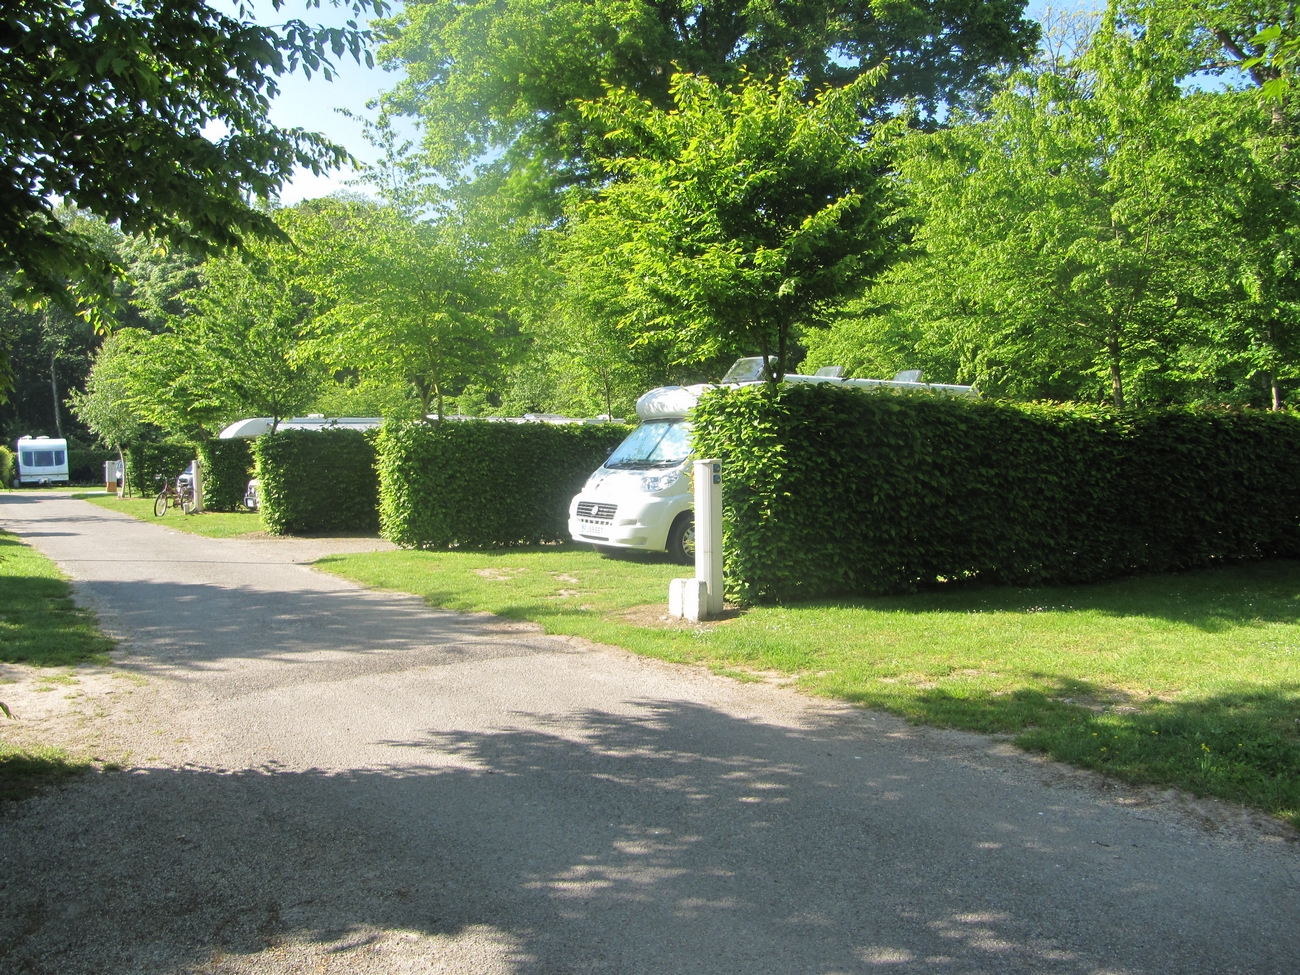 Location emplacement camping au camping de la Forêt de Jumièges, camping 4 étoiles, hôtellerie de plein air avec piscine couverte en Seine Maritime, proche de Rouen